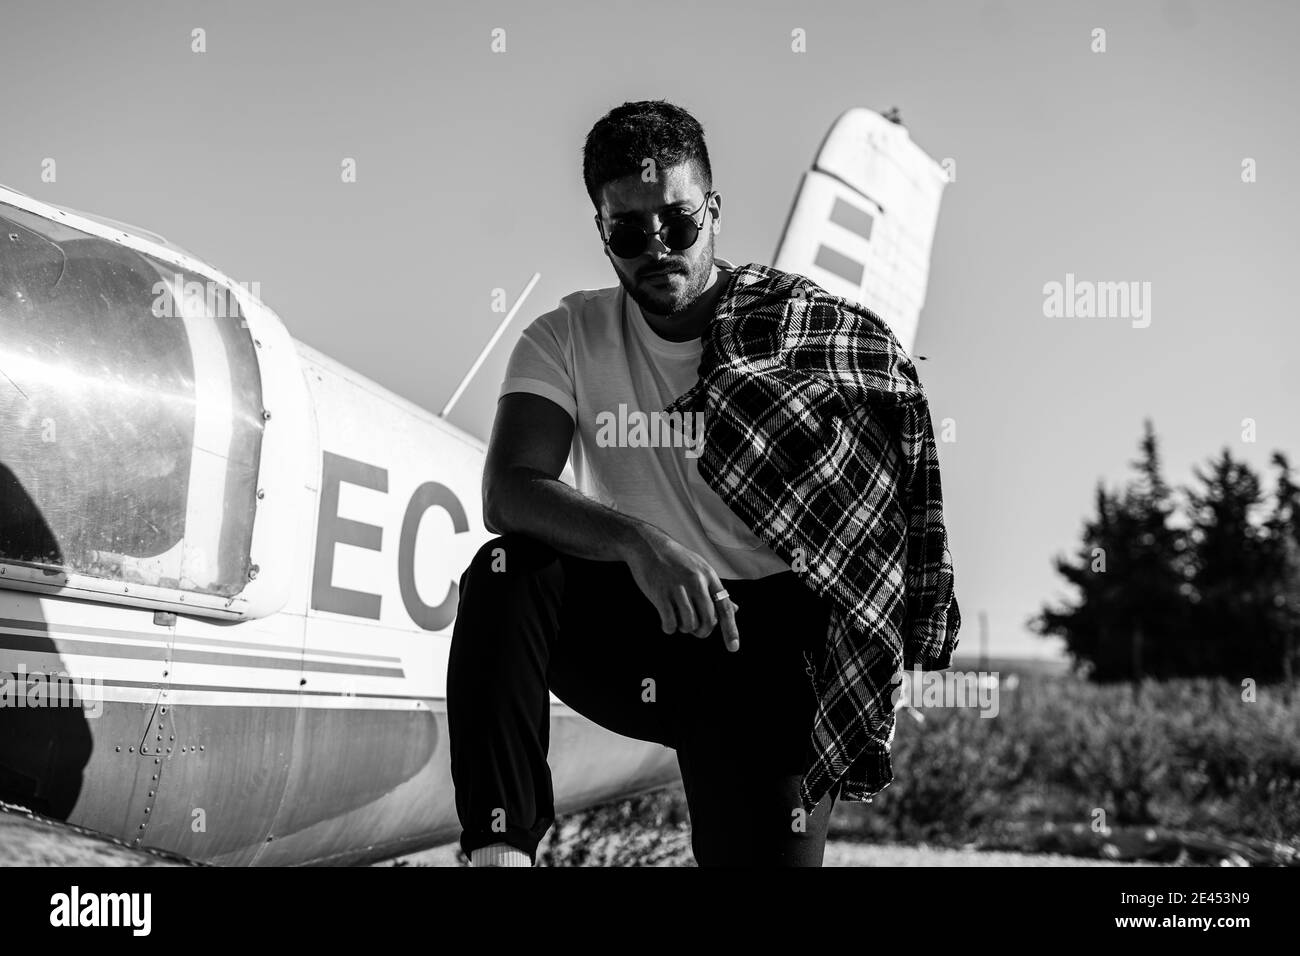 Prise de vue en niveaux de gris d'un homme caucasien froid debout près d'un avion accidenté Banque D'Images